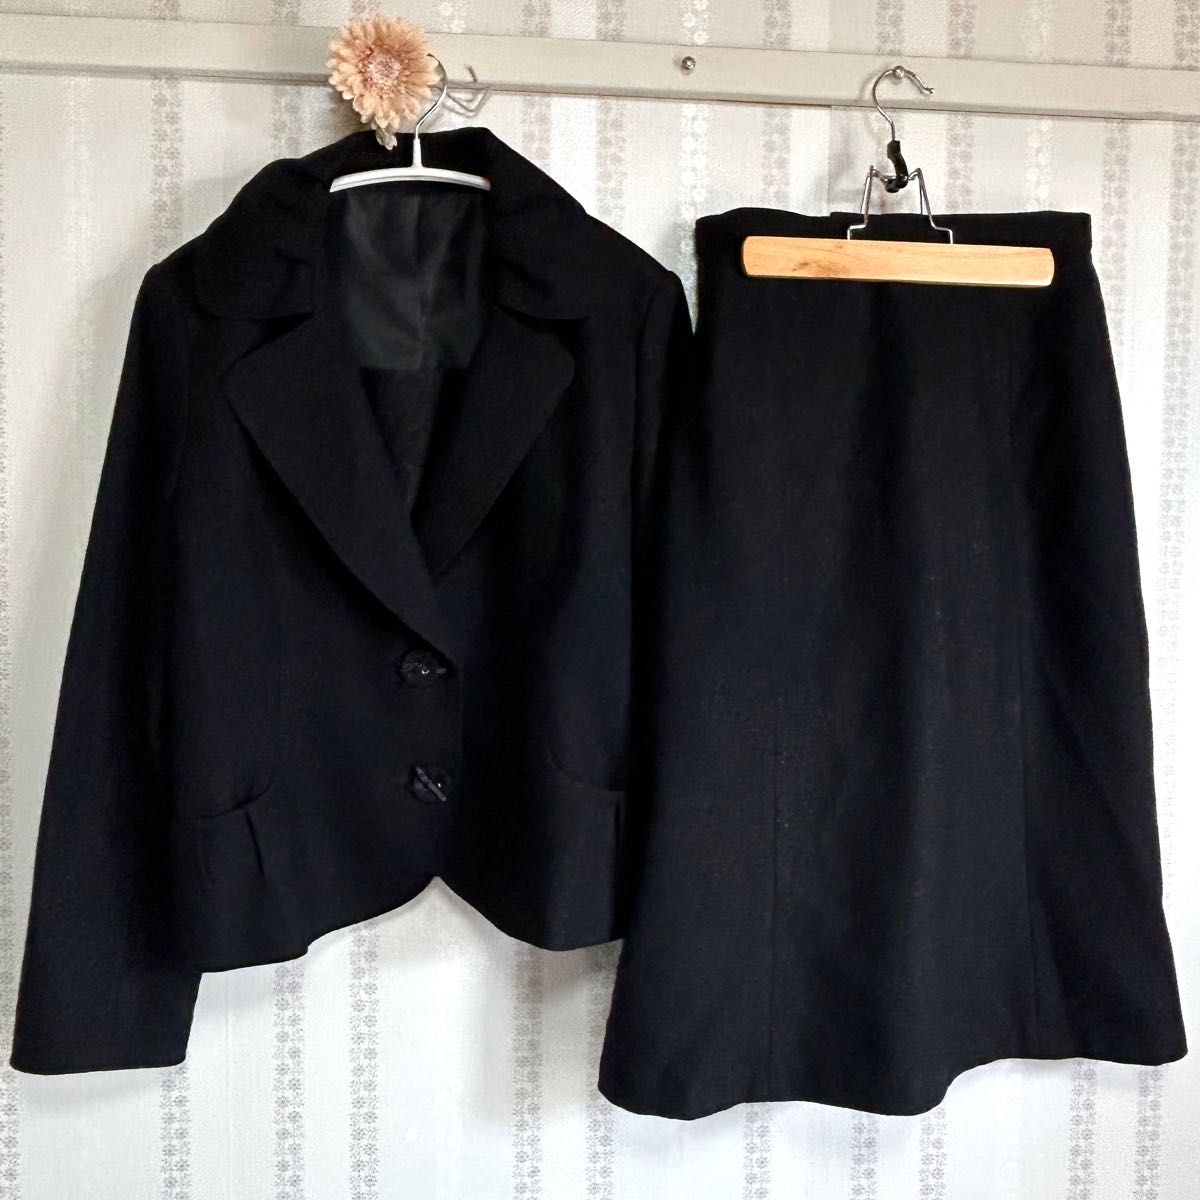 【美品】LA VORO セットアップスーツ フォーマルスーツ セレモニースーツ ブラック ウール 大きいサイズ 13AR